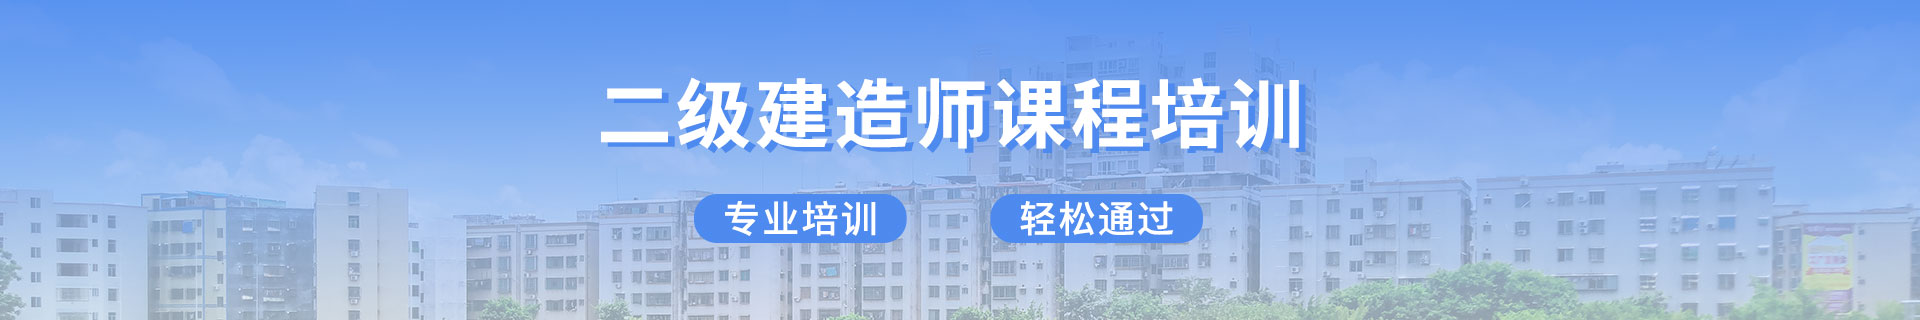 广西桂林优路教育培训学校